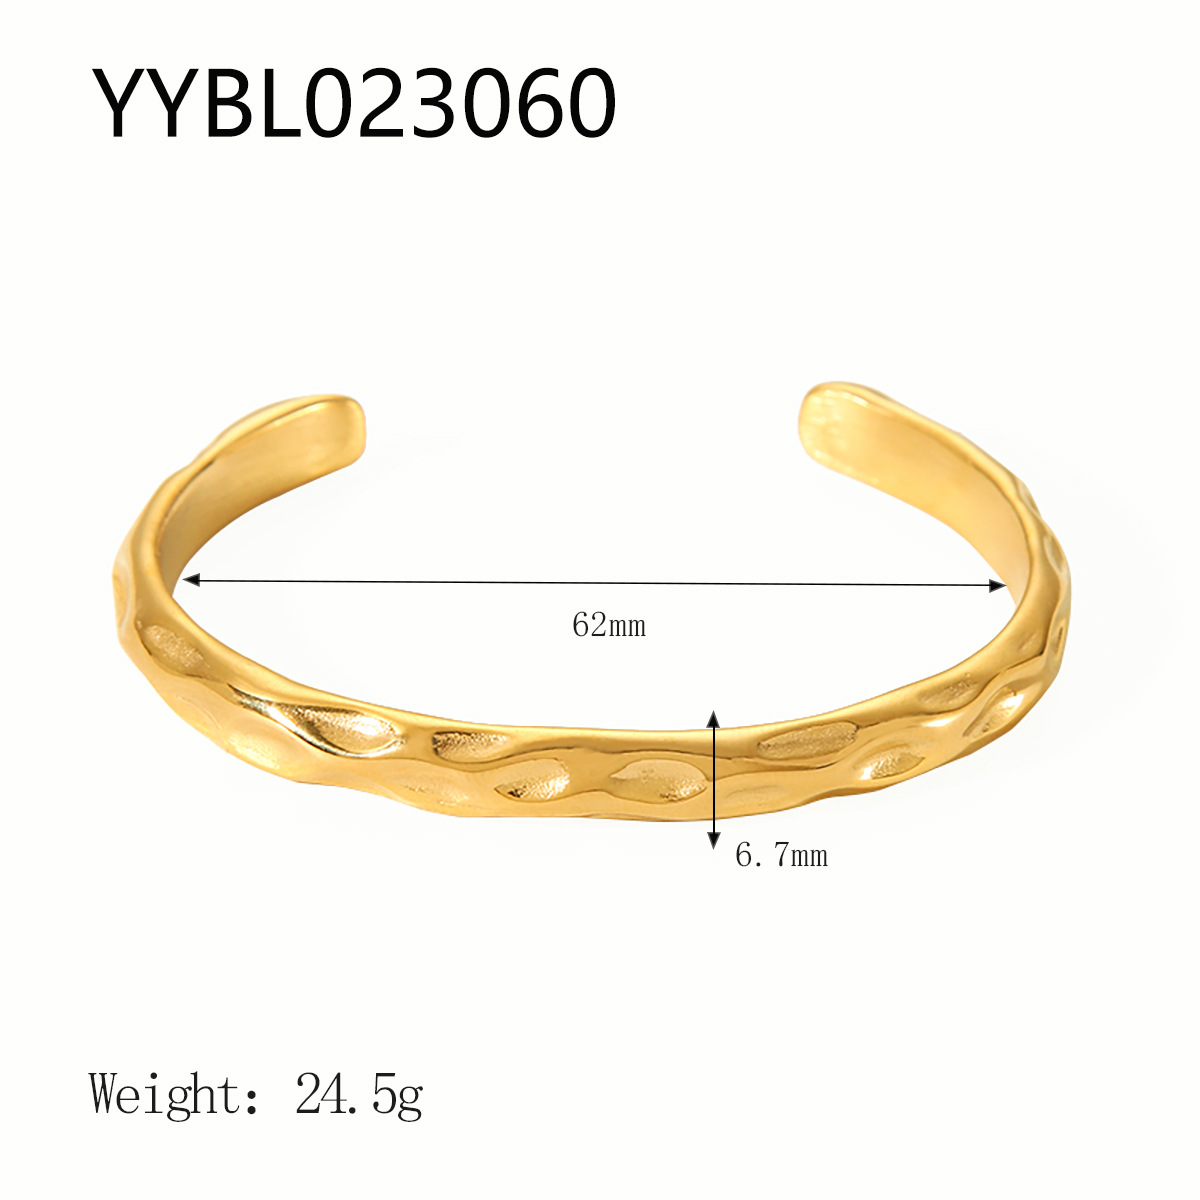 YYBL023060